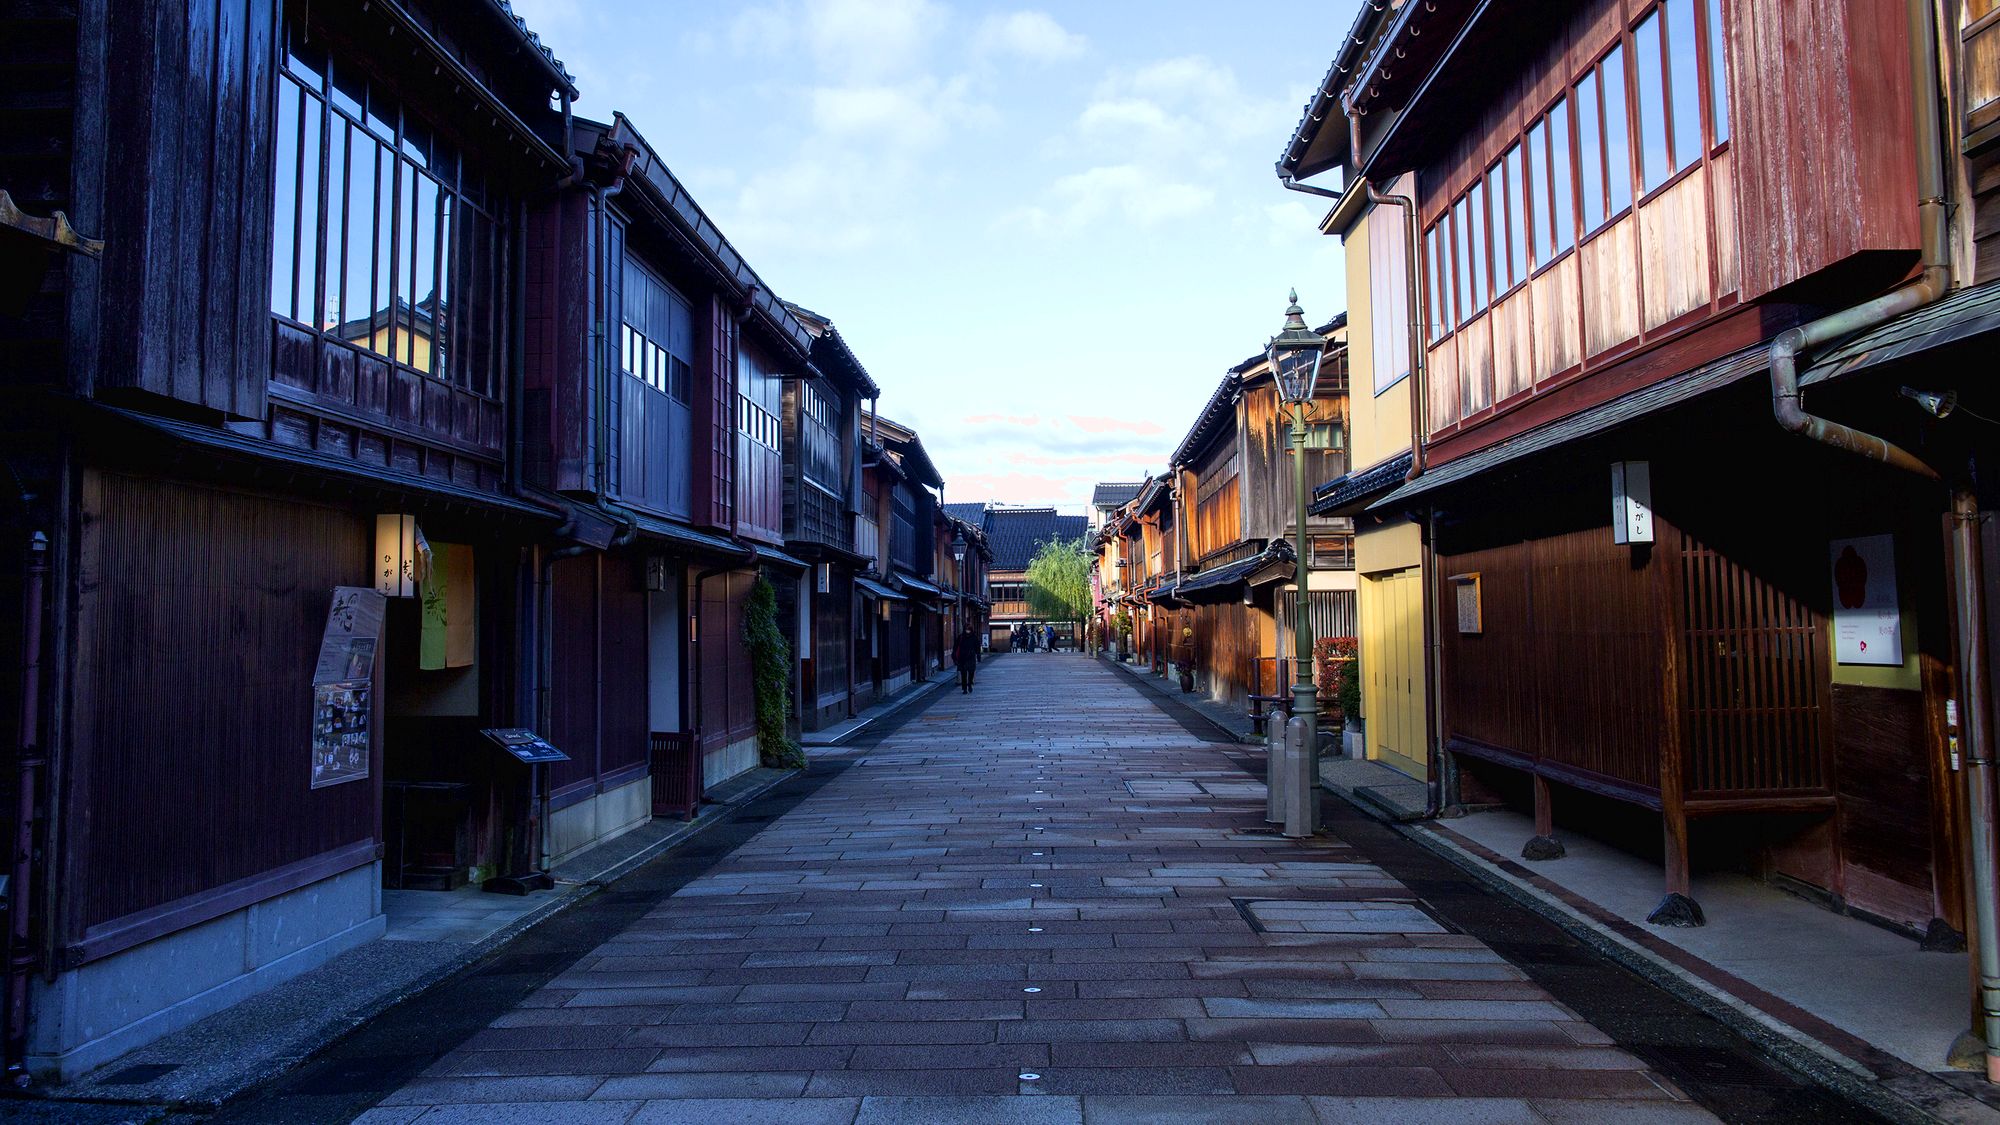 【金沢ひがし茶屋街】江戸時代の雰囲気を残した石畳の街並み※当館から車で約６０分程です